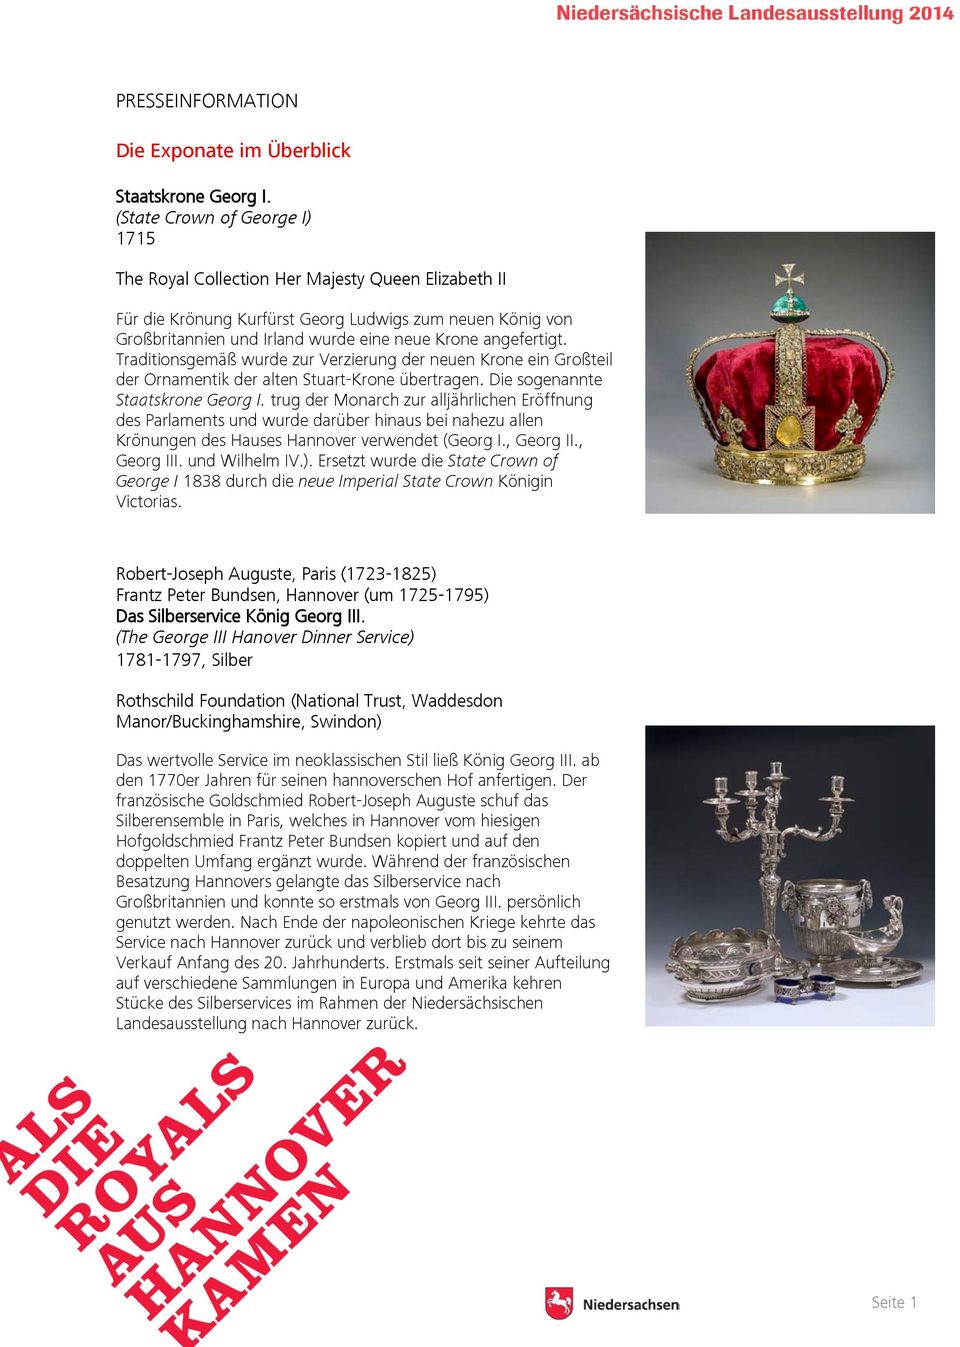 angefertigt. Traditionsgemäß wurde zur Verzierung der neuen Krone ein Großteil der Ornamentik der alten Stuart-Krone übertragen. Die sogenannte Staatskrone Georg I.